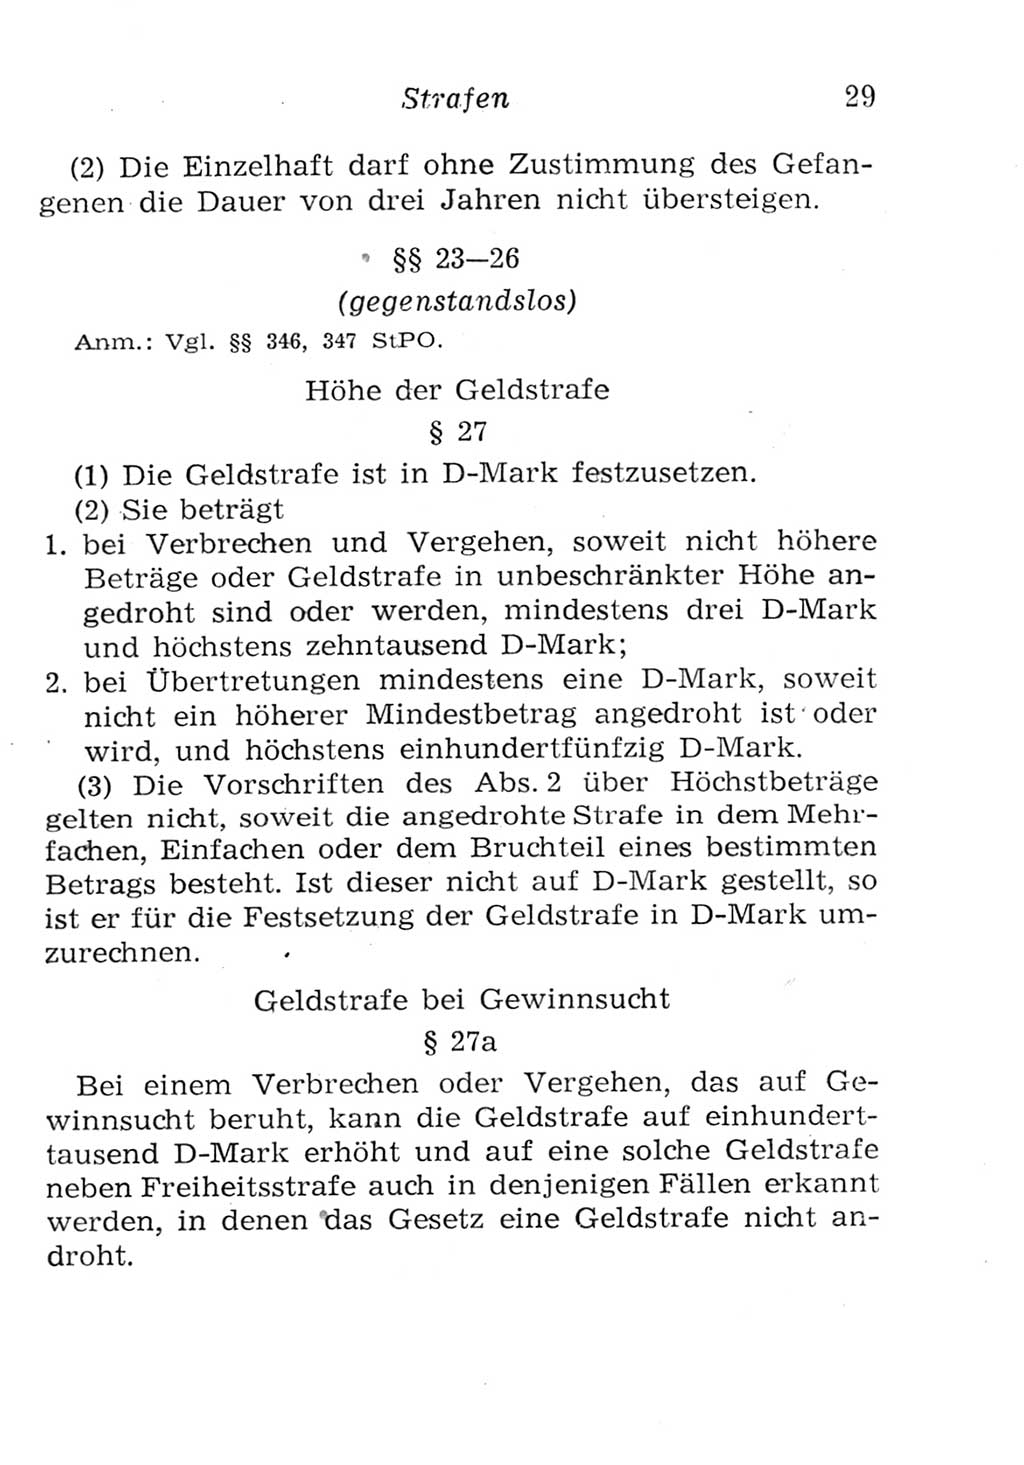 Strafgesetzbuch (StGB) und andere Strafgesetze [Deutsche Demokratische Republik (DDR)] 1957, Seite 29 (StGB Strafges. DDR 1957, S. 29)